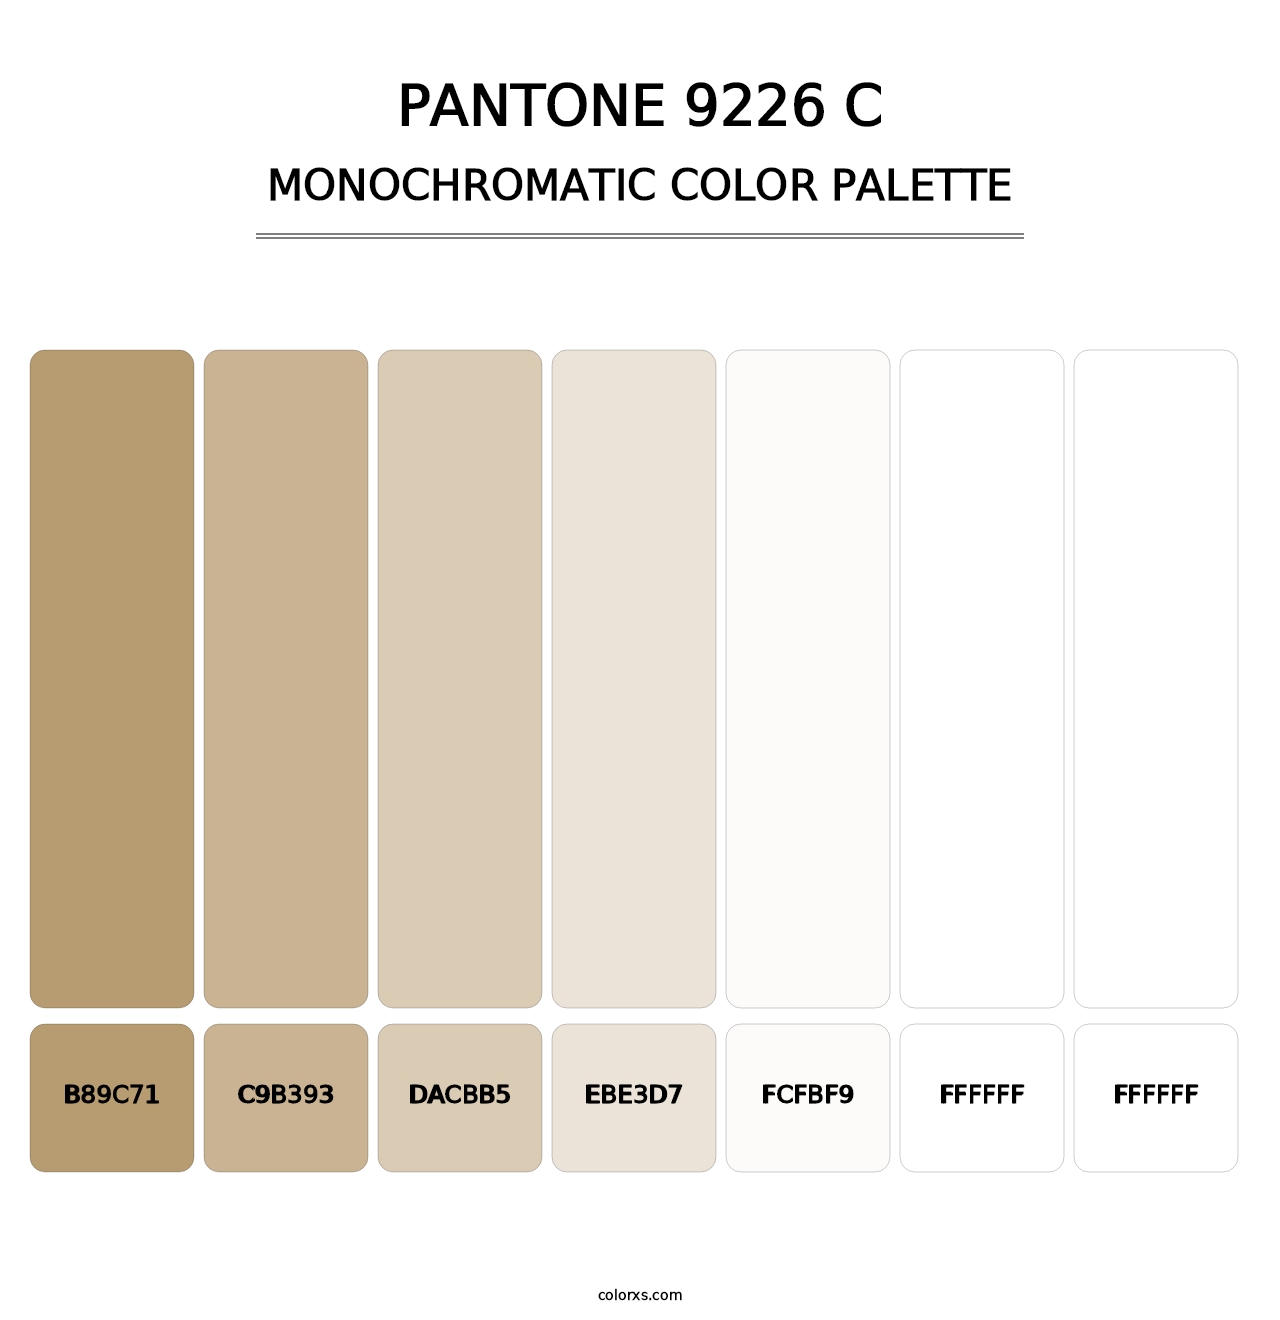 PANTONE 9226 C - Monochromatic Color Palette